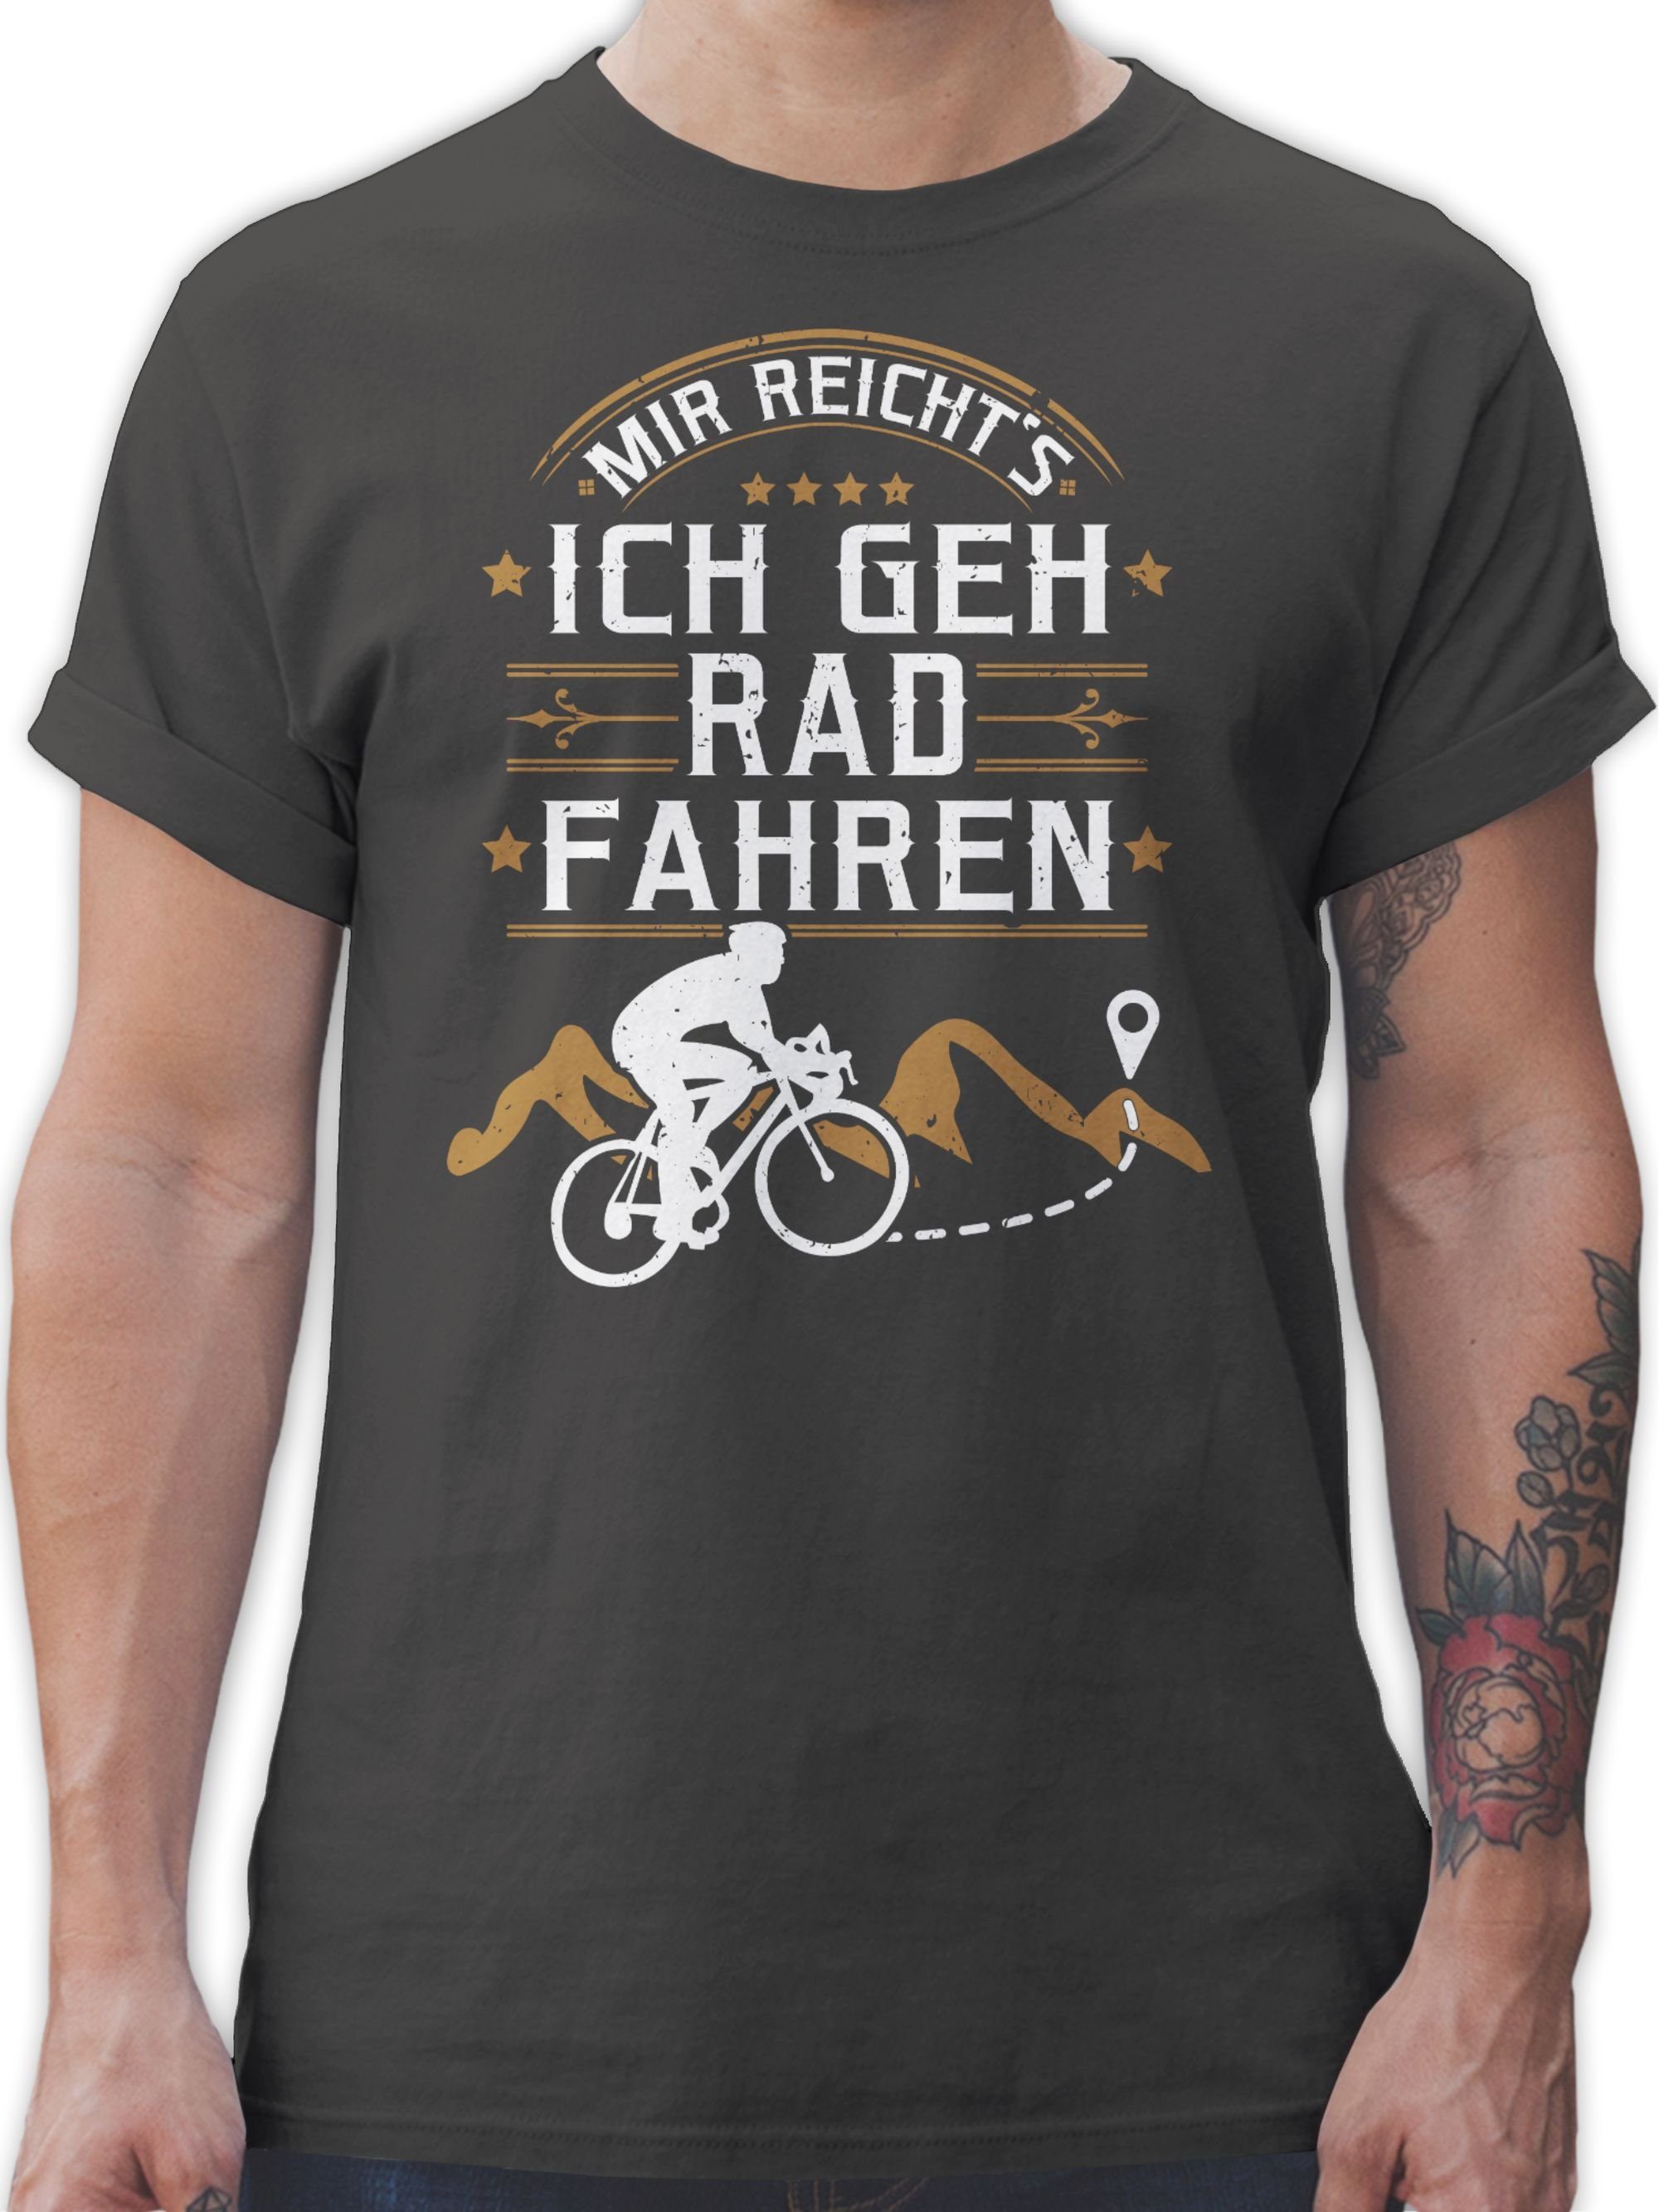 Bekleidung Radsport reicht's Fahrrad fahren Mir Dunkelgrau Rad T-Shirt geh ich 03 Shirtracer